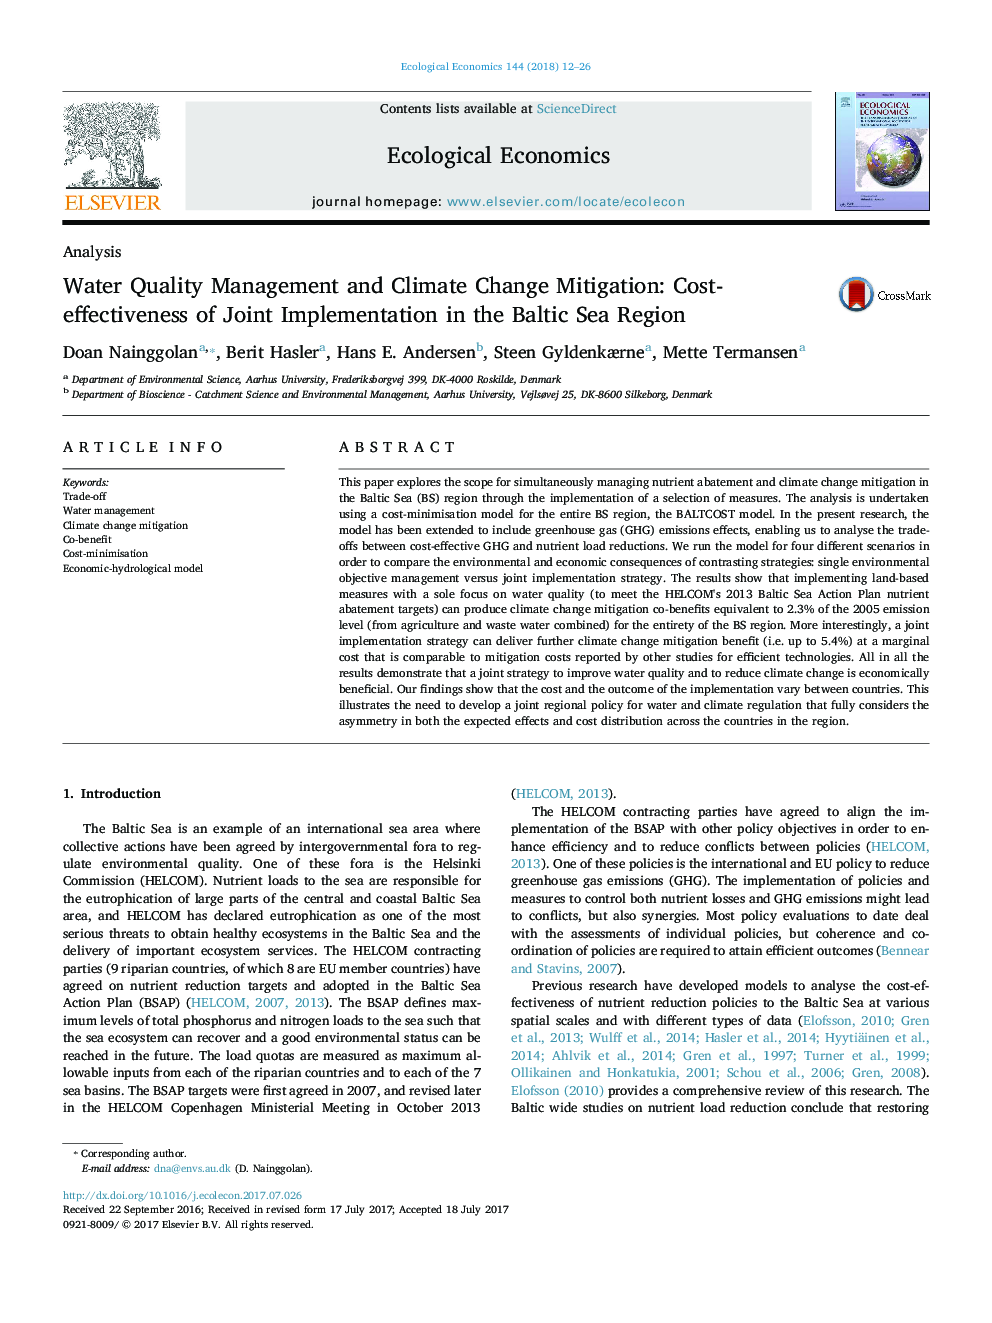 مدیریت کیفیت آب و کاهش تغییرات اقلیمی: هزینه-اثربخشی اجرای مشترک در منطقه دریای بالتیک